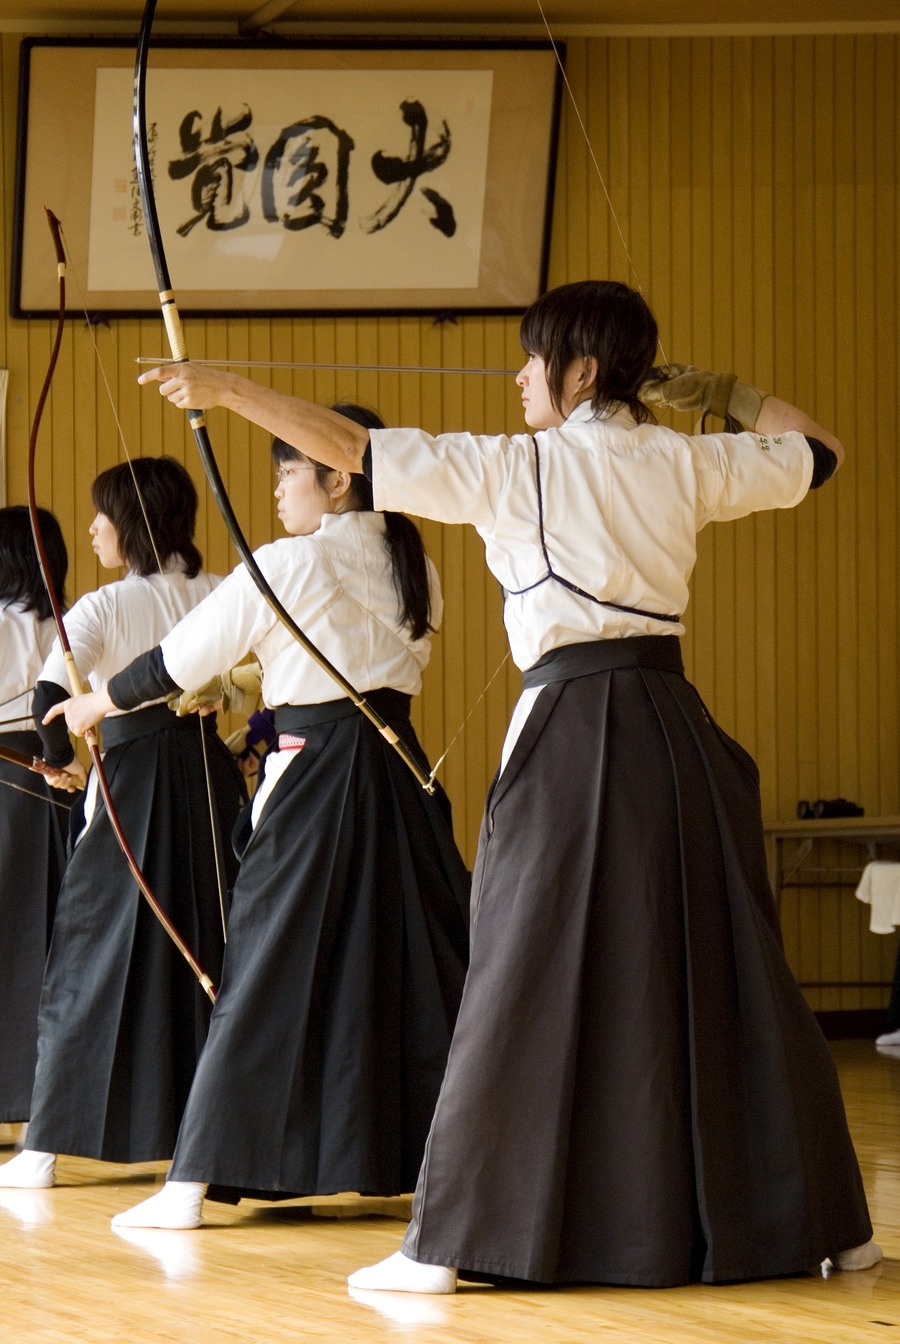 弓道队 (日本艺术的射箭)